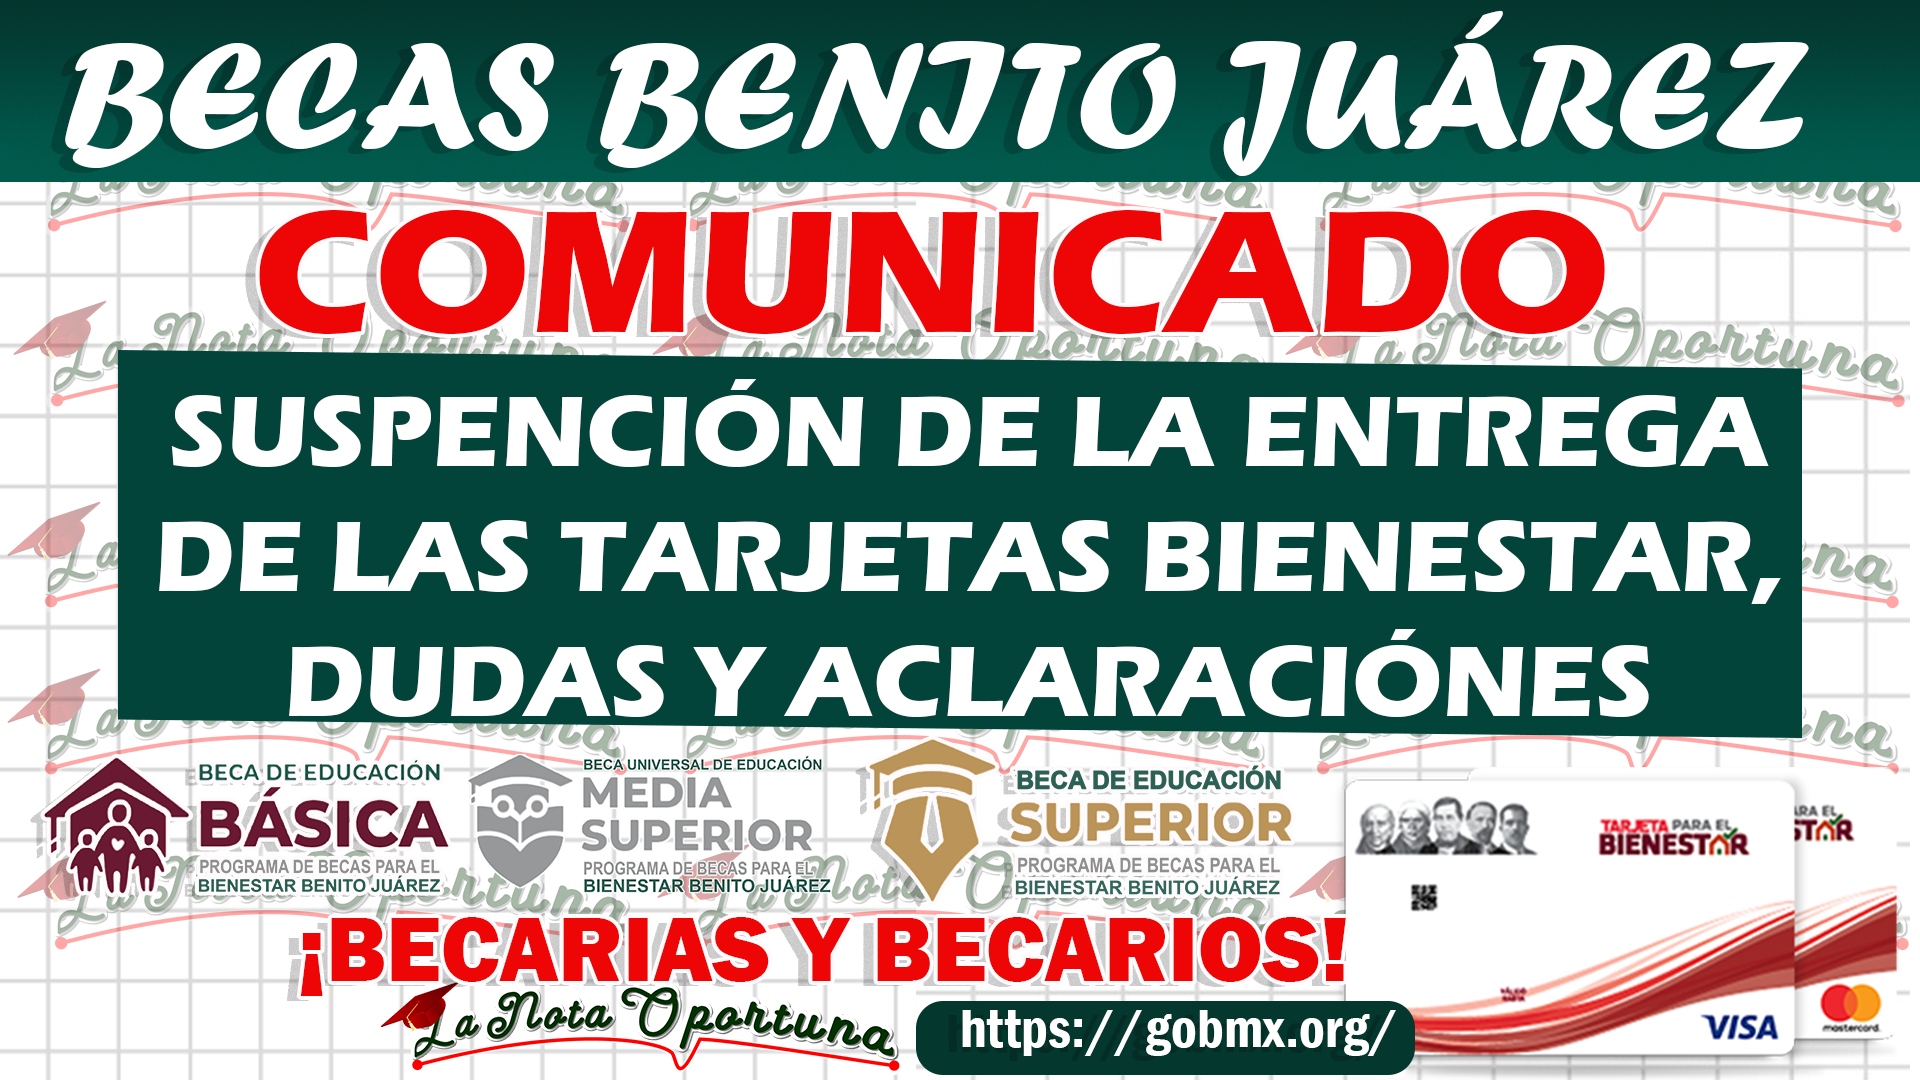 Â¡Importante Becarios! La CoordinaciÃ³n Nacional anuncio un importante comunicado para los becarios de las Becas Benito JuÃ¡rez